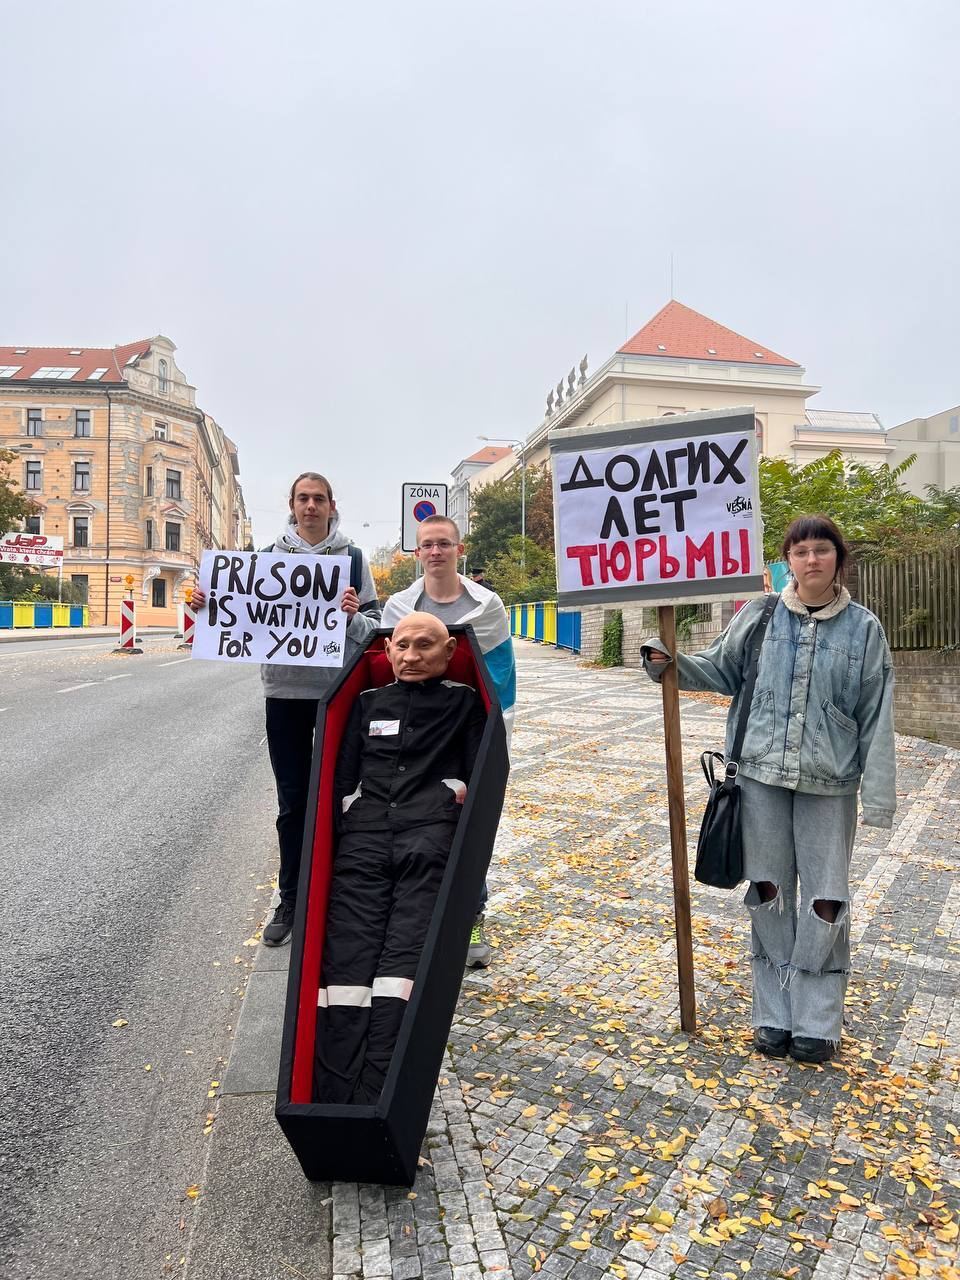 "Долгих лет тюрьмы": в Праге активисты провели смелую акцию у посольства РФ ко дню рождения Путина. Фото и видео